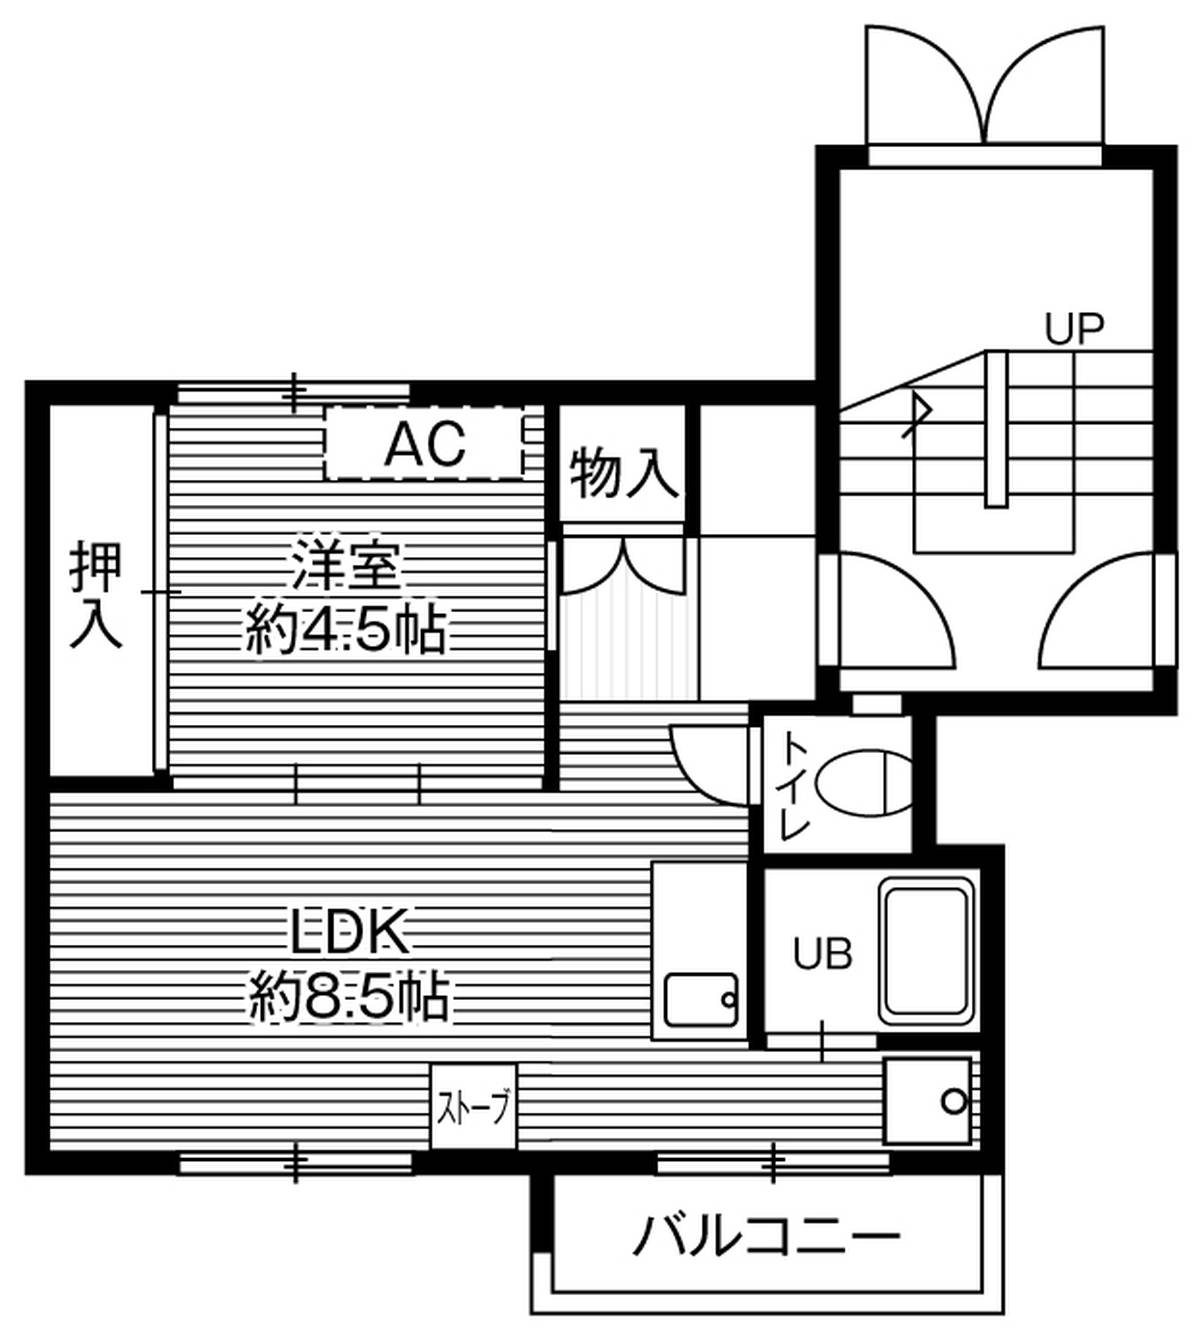 1LDK floorplan of Village House Zenibako in Otaru-shi